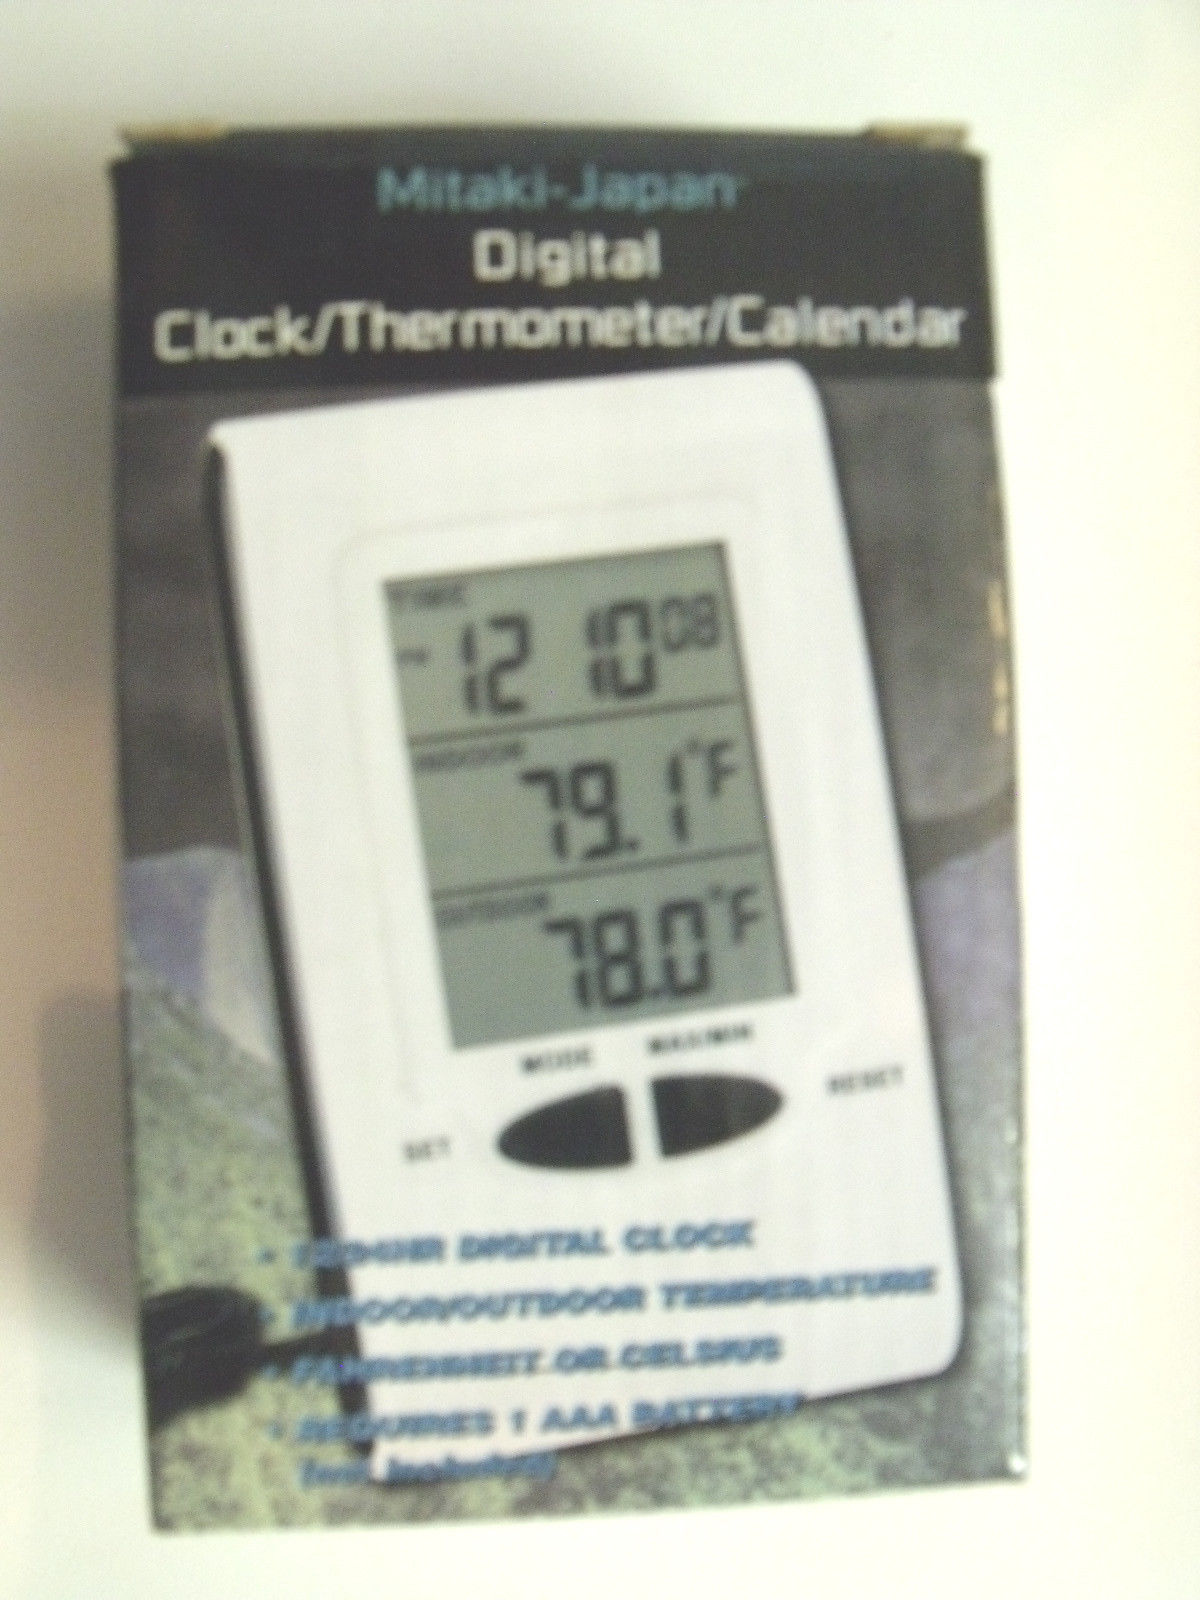 Mitaki-Japan Digital Clock Thermometer Calendar ELCLOCK2